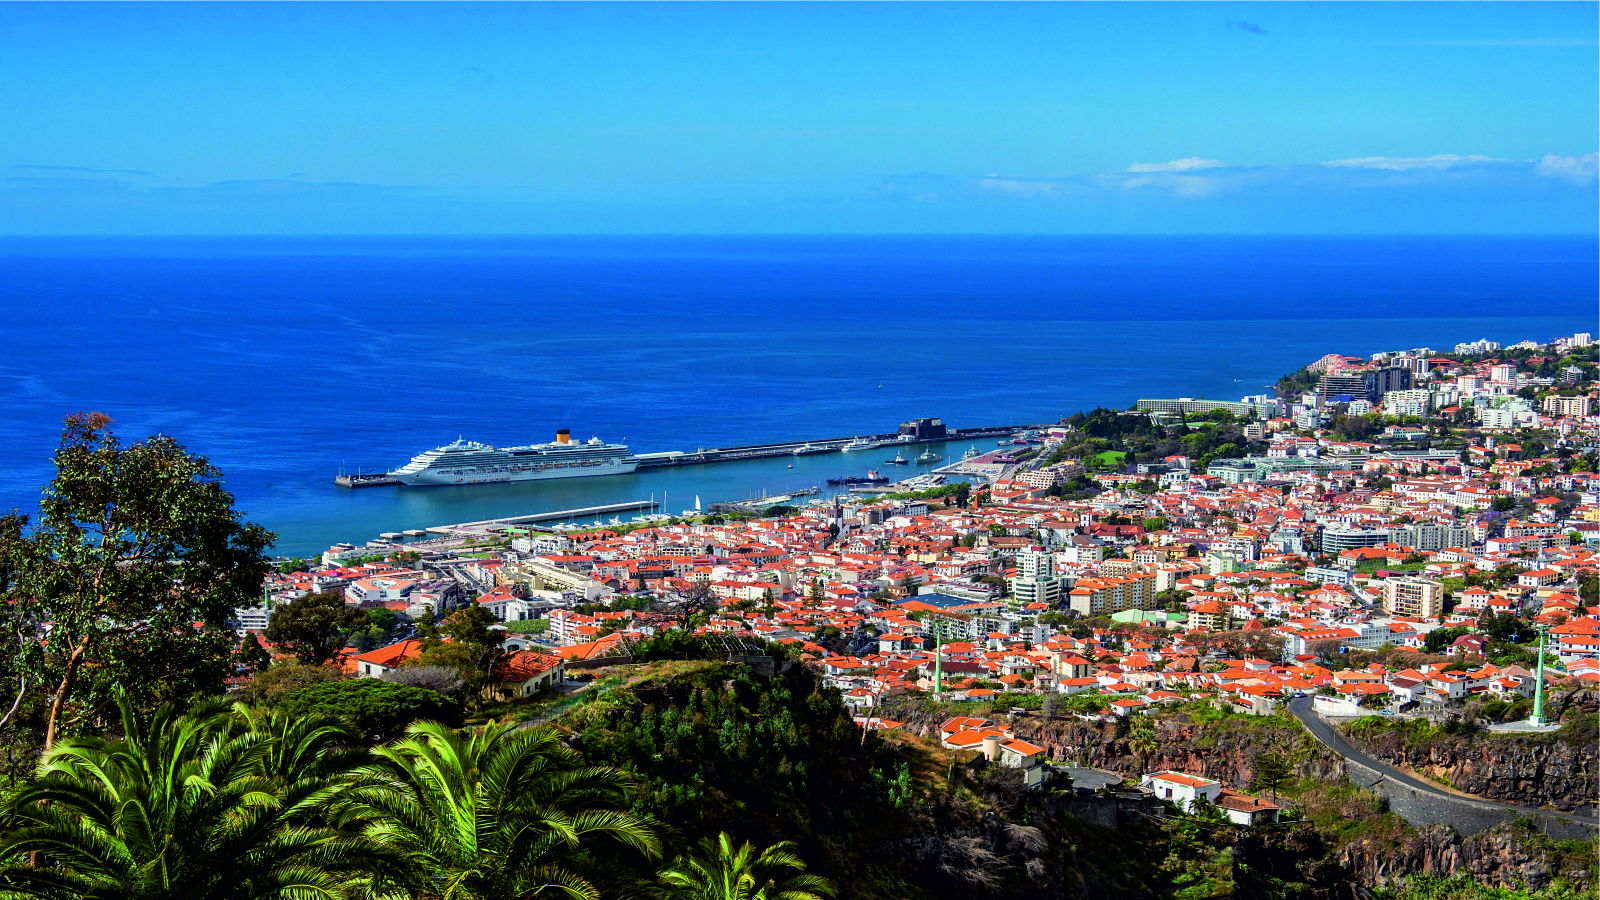 Funchal, Ilha da Madeira 